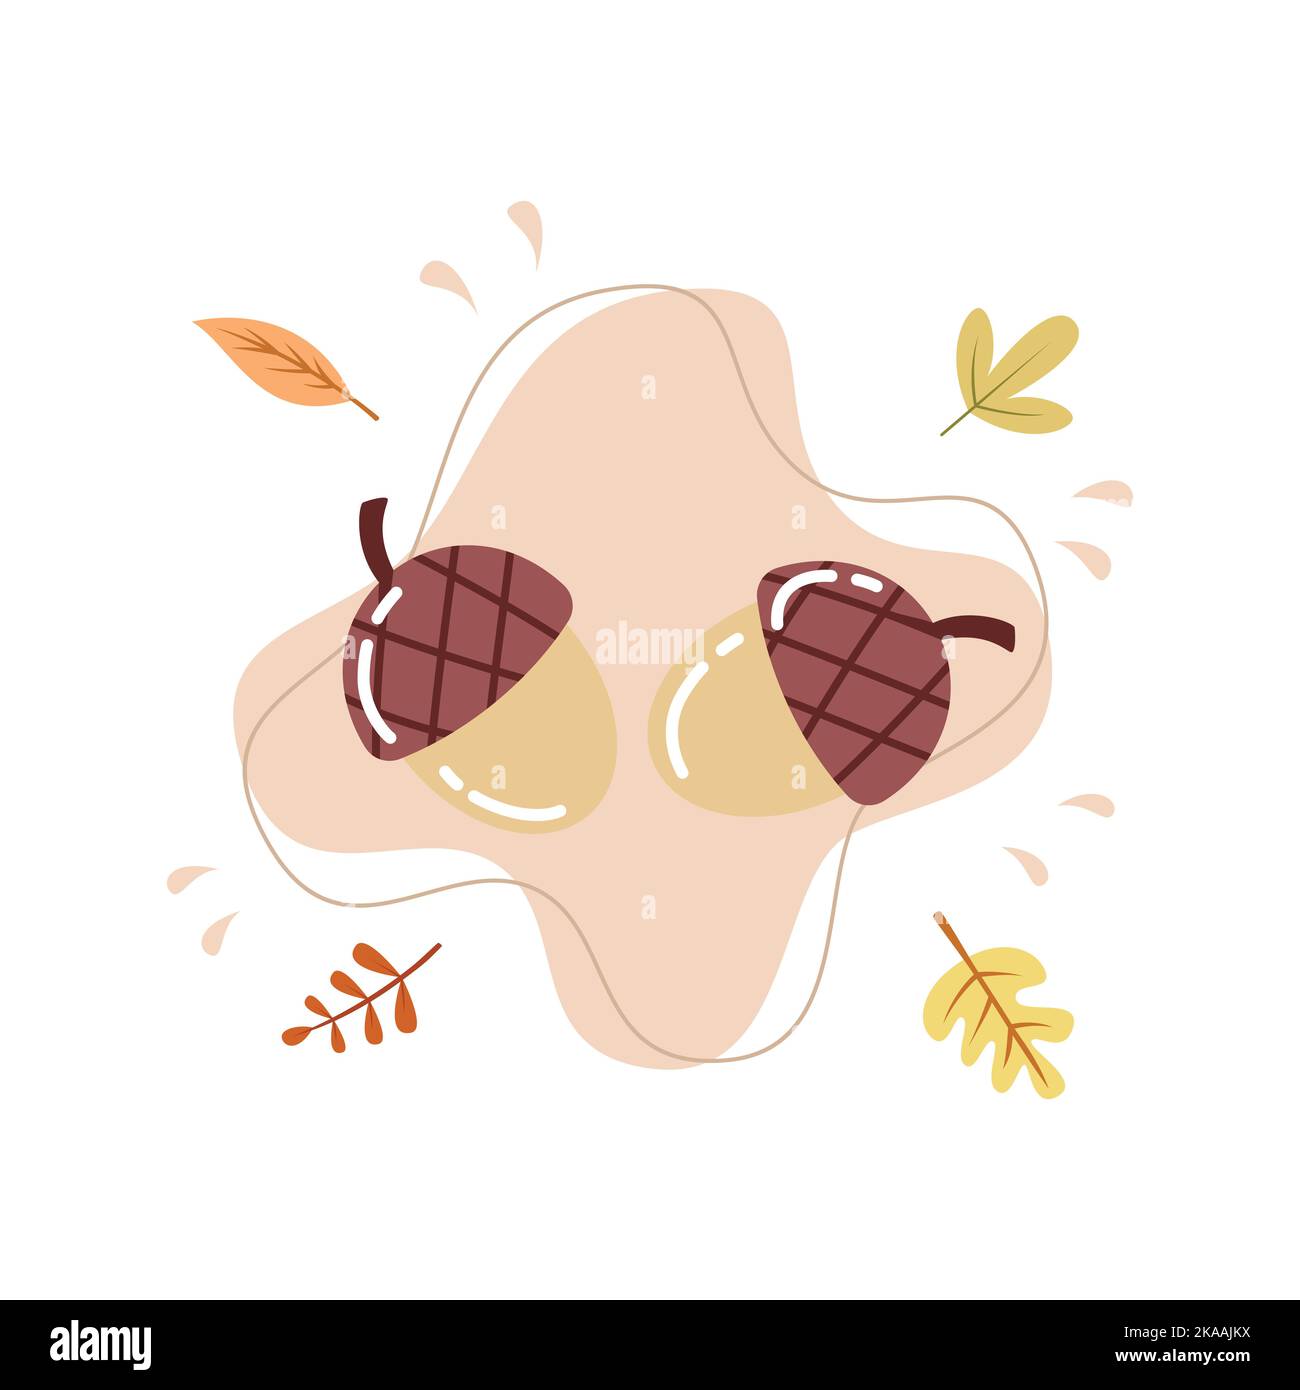 Flache Illustration von Eichelnüssen für hygge Herbst Feier Vektor-Illustration Stock Vektor